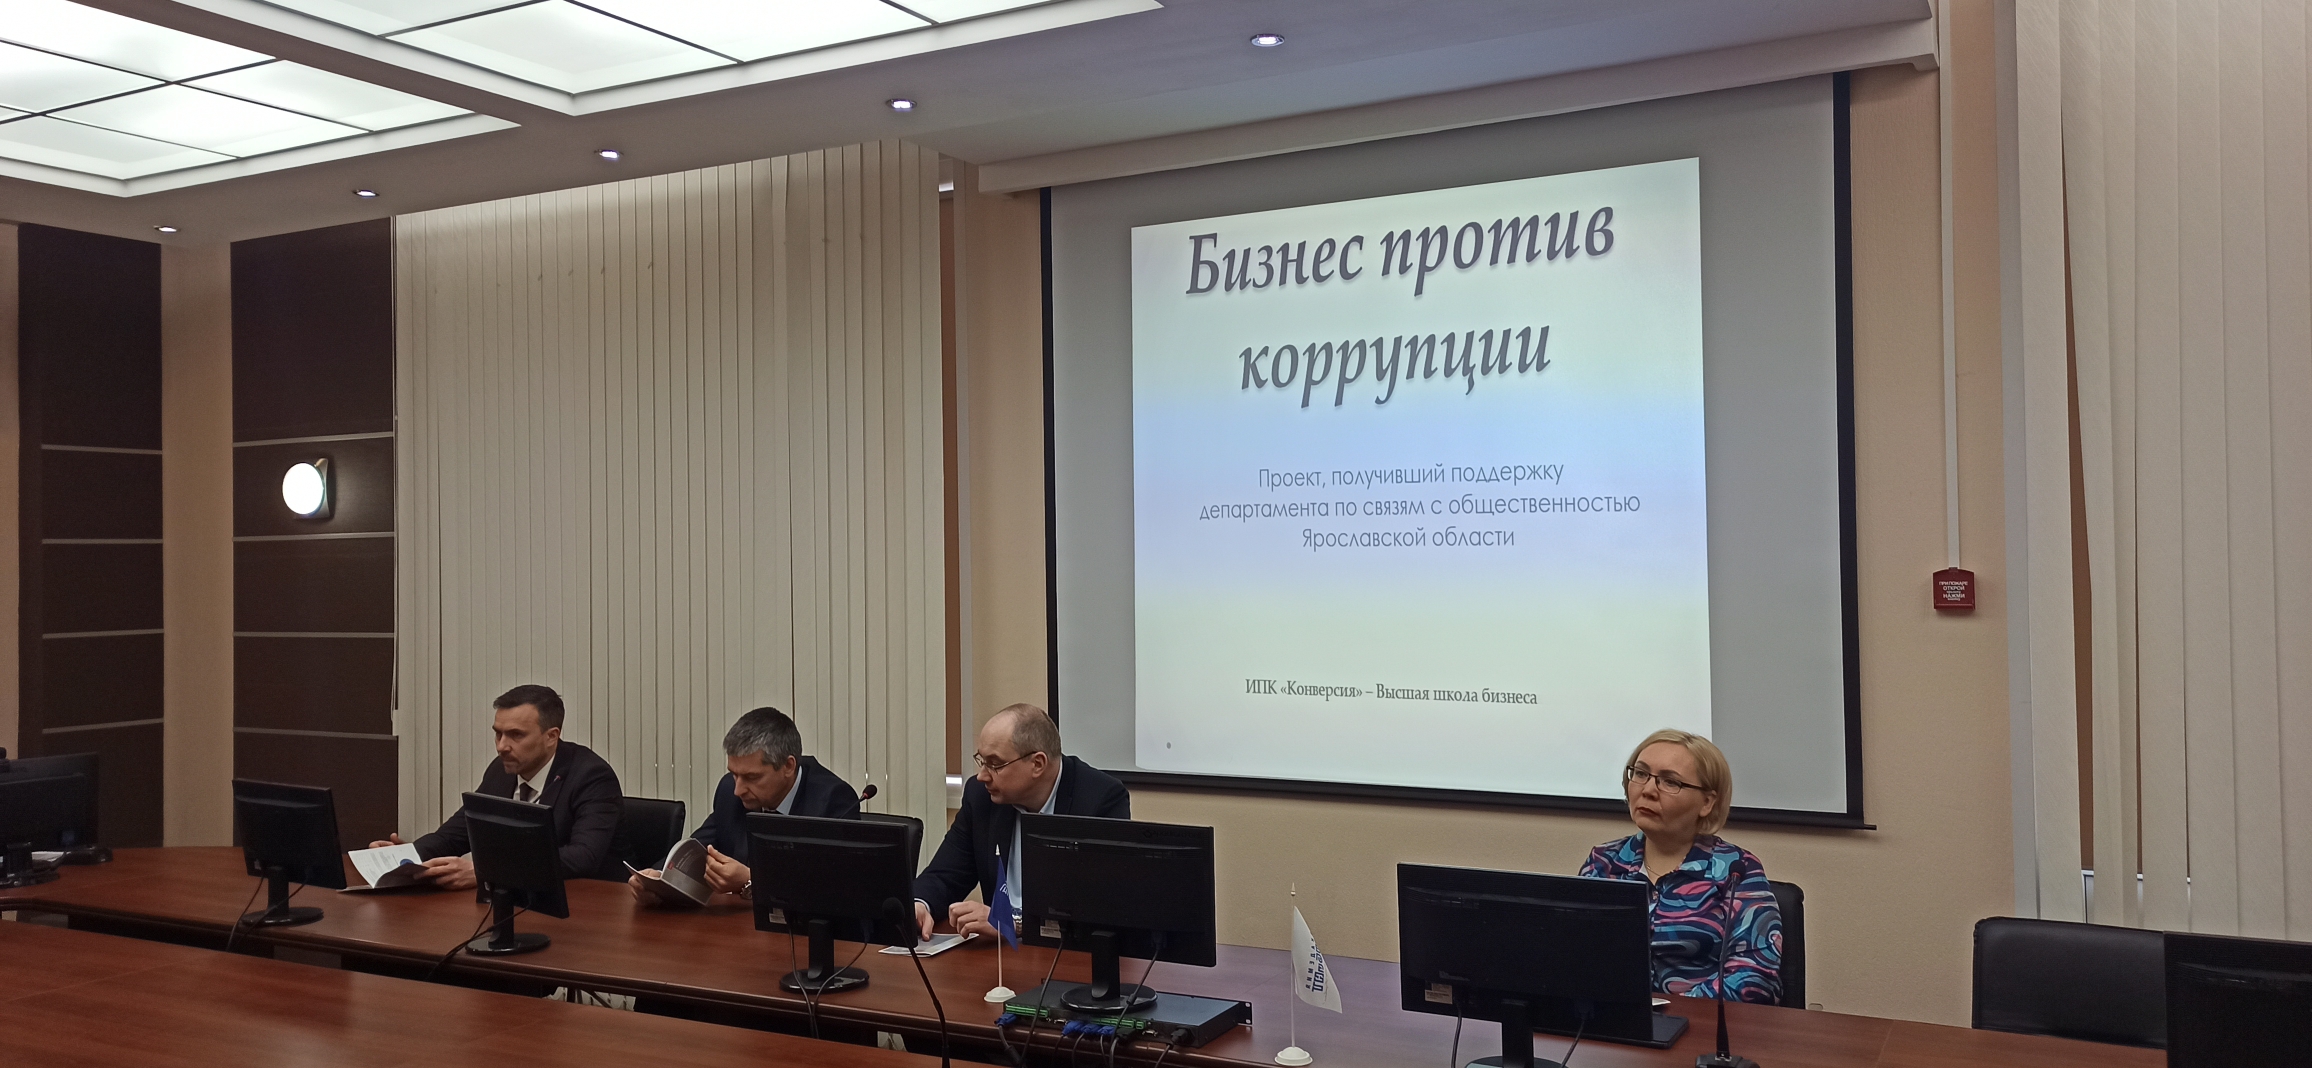 В Ярославле в формате круглого стола подвели итоги проекта «Бизнес против коррупции»